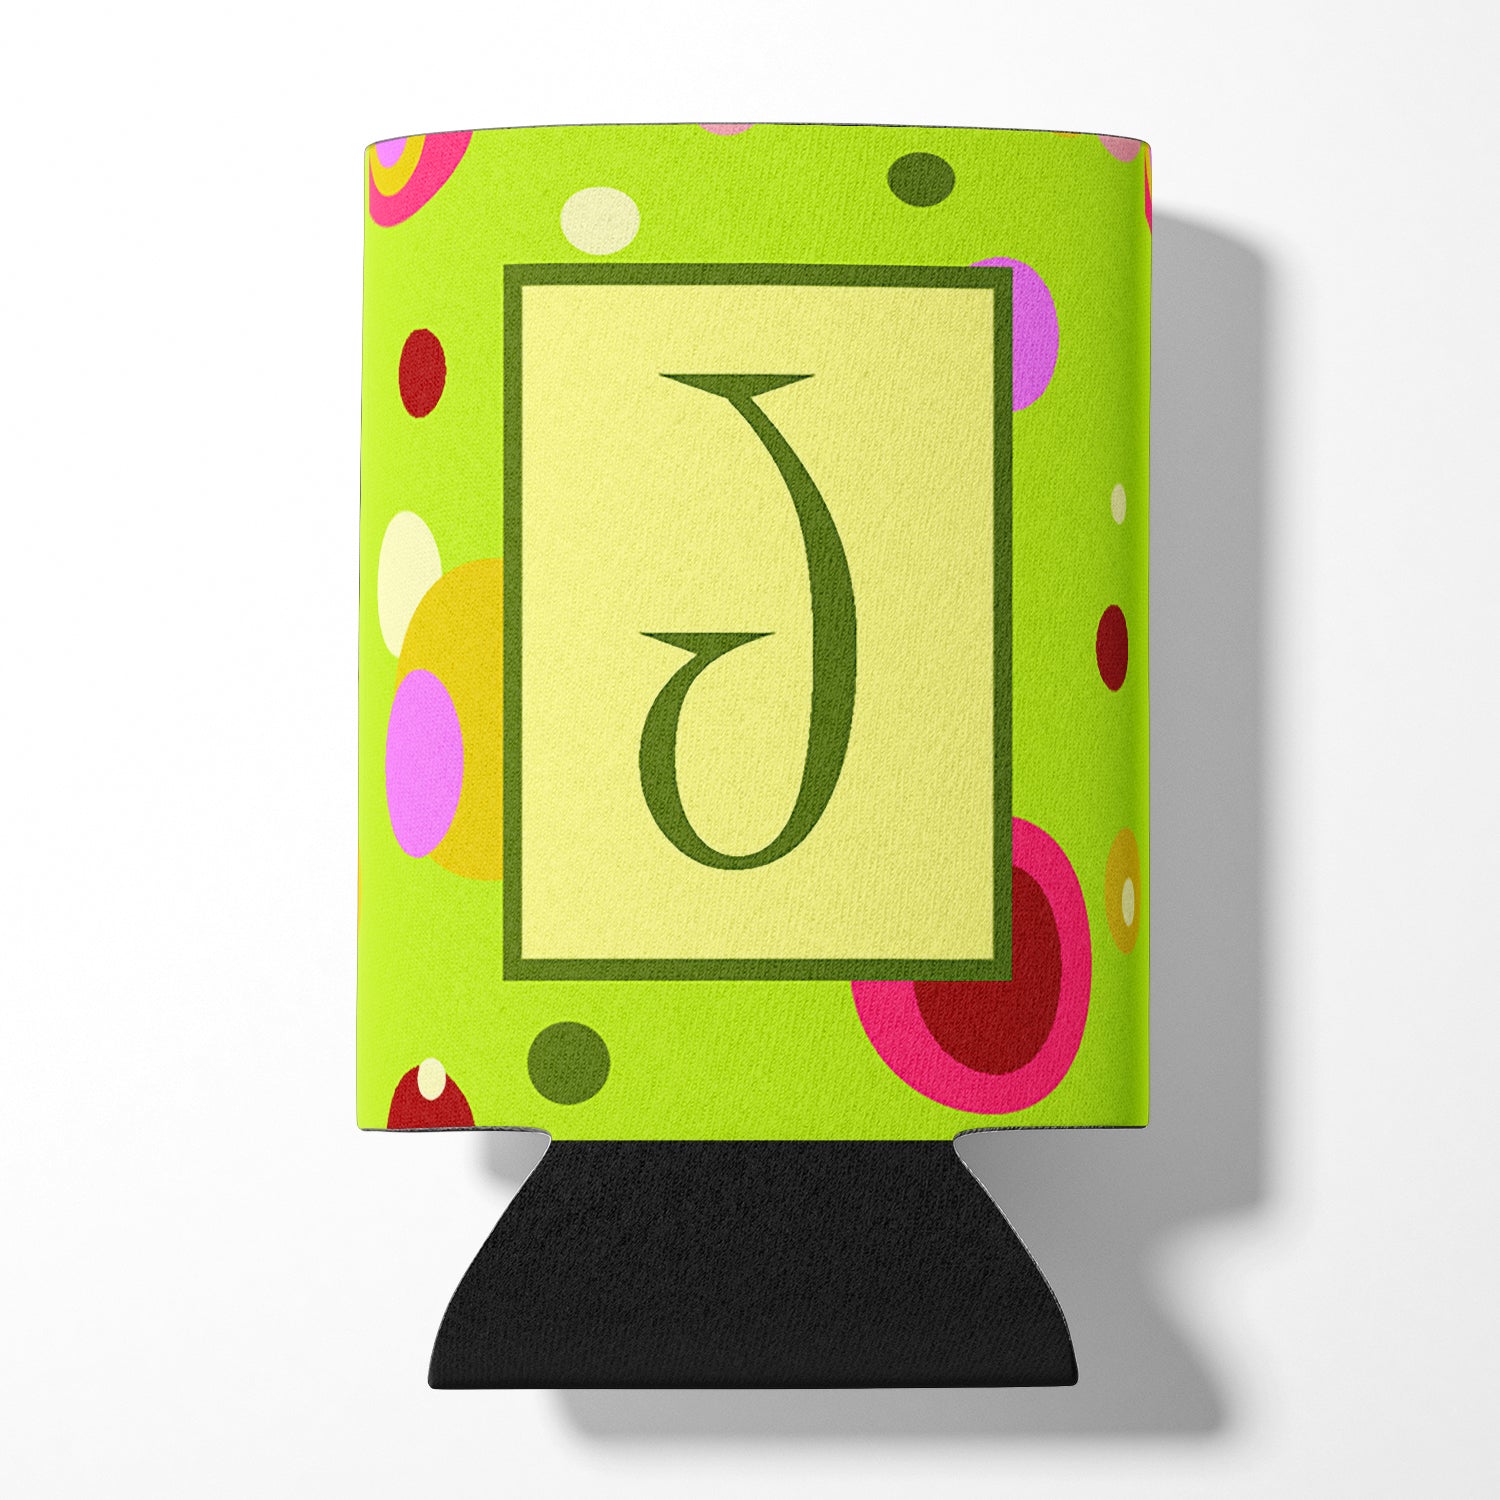 Letter J Initial Monogram - Green Can or Bottle Beverage Insulator Hugger.